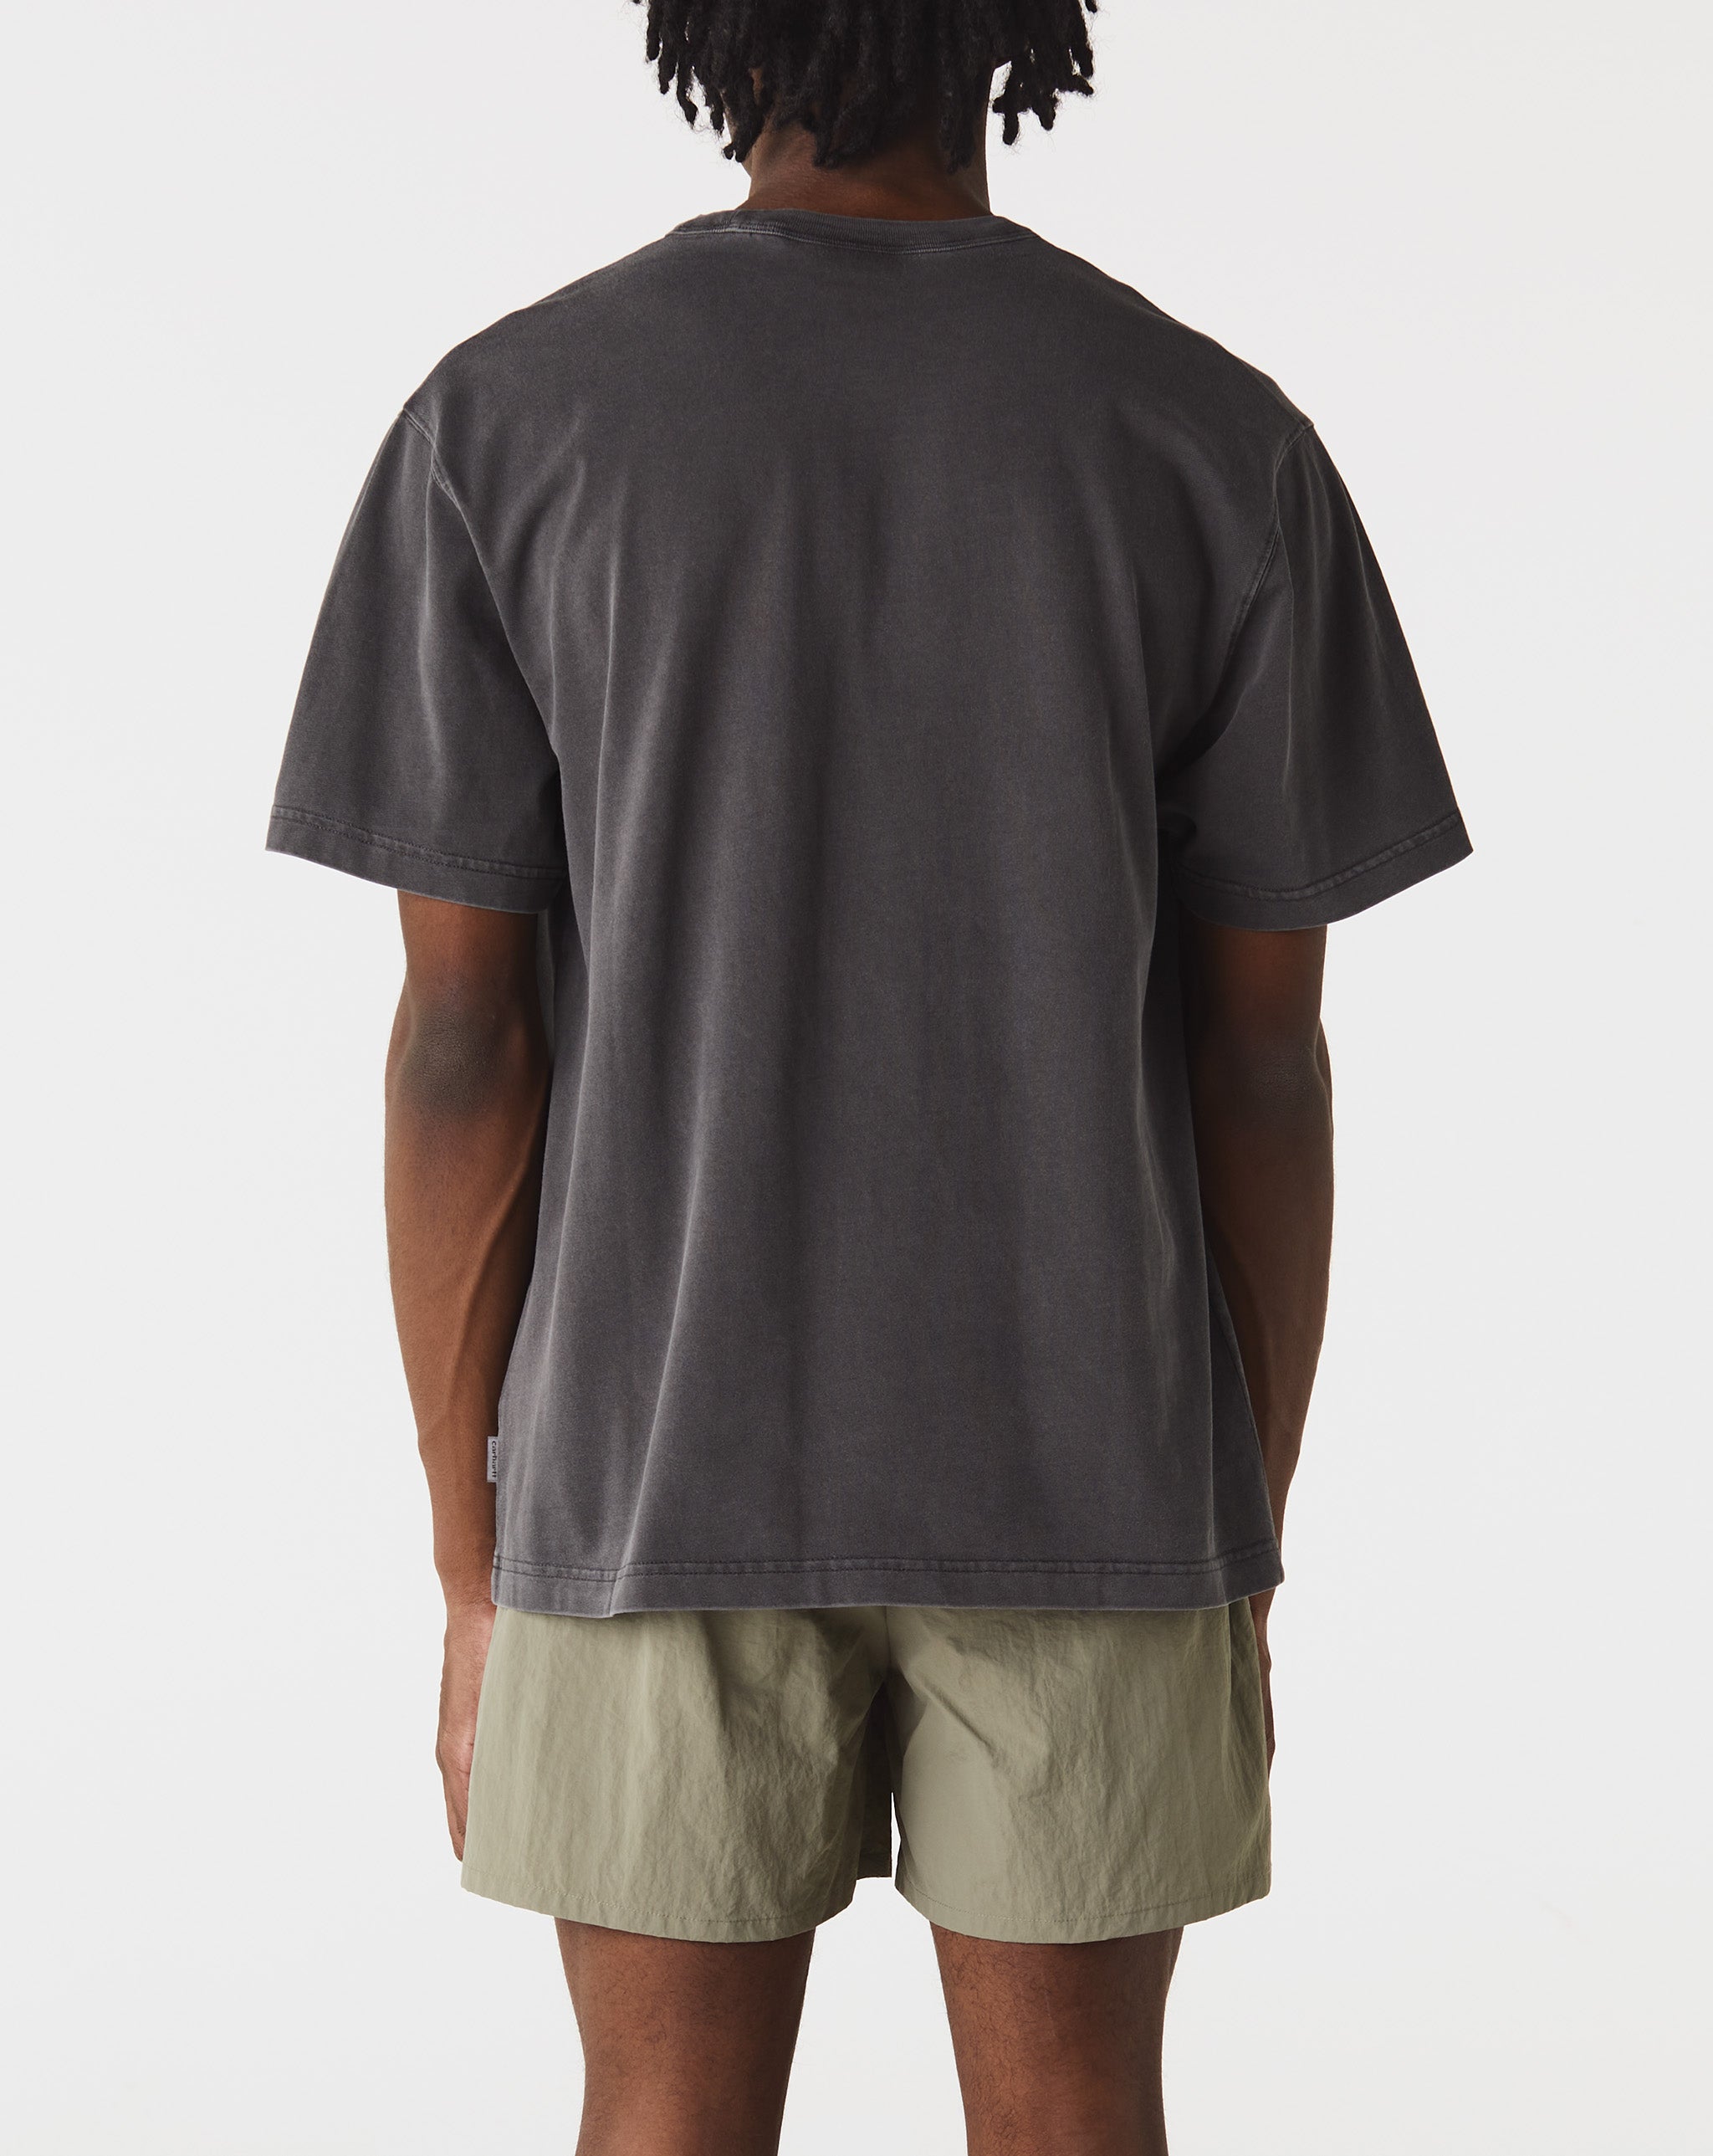 Carhartt WIP Taos T-Shirt  - Cheap 127-0 Jordan outlet